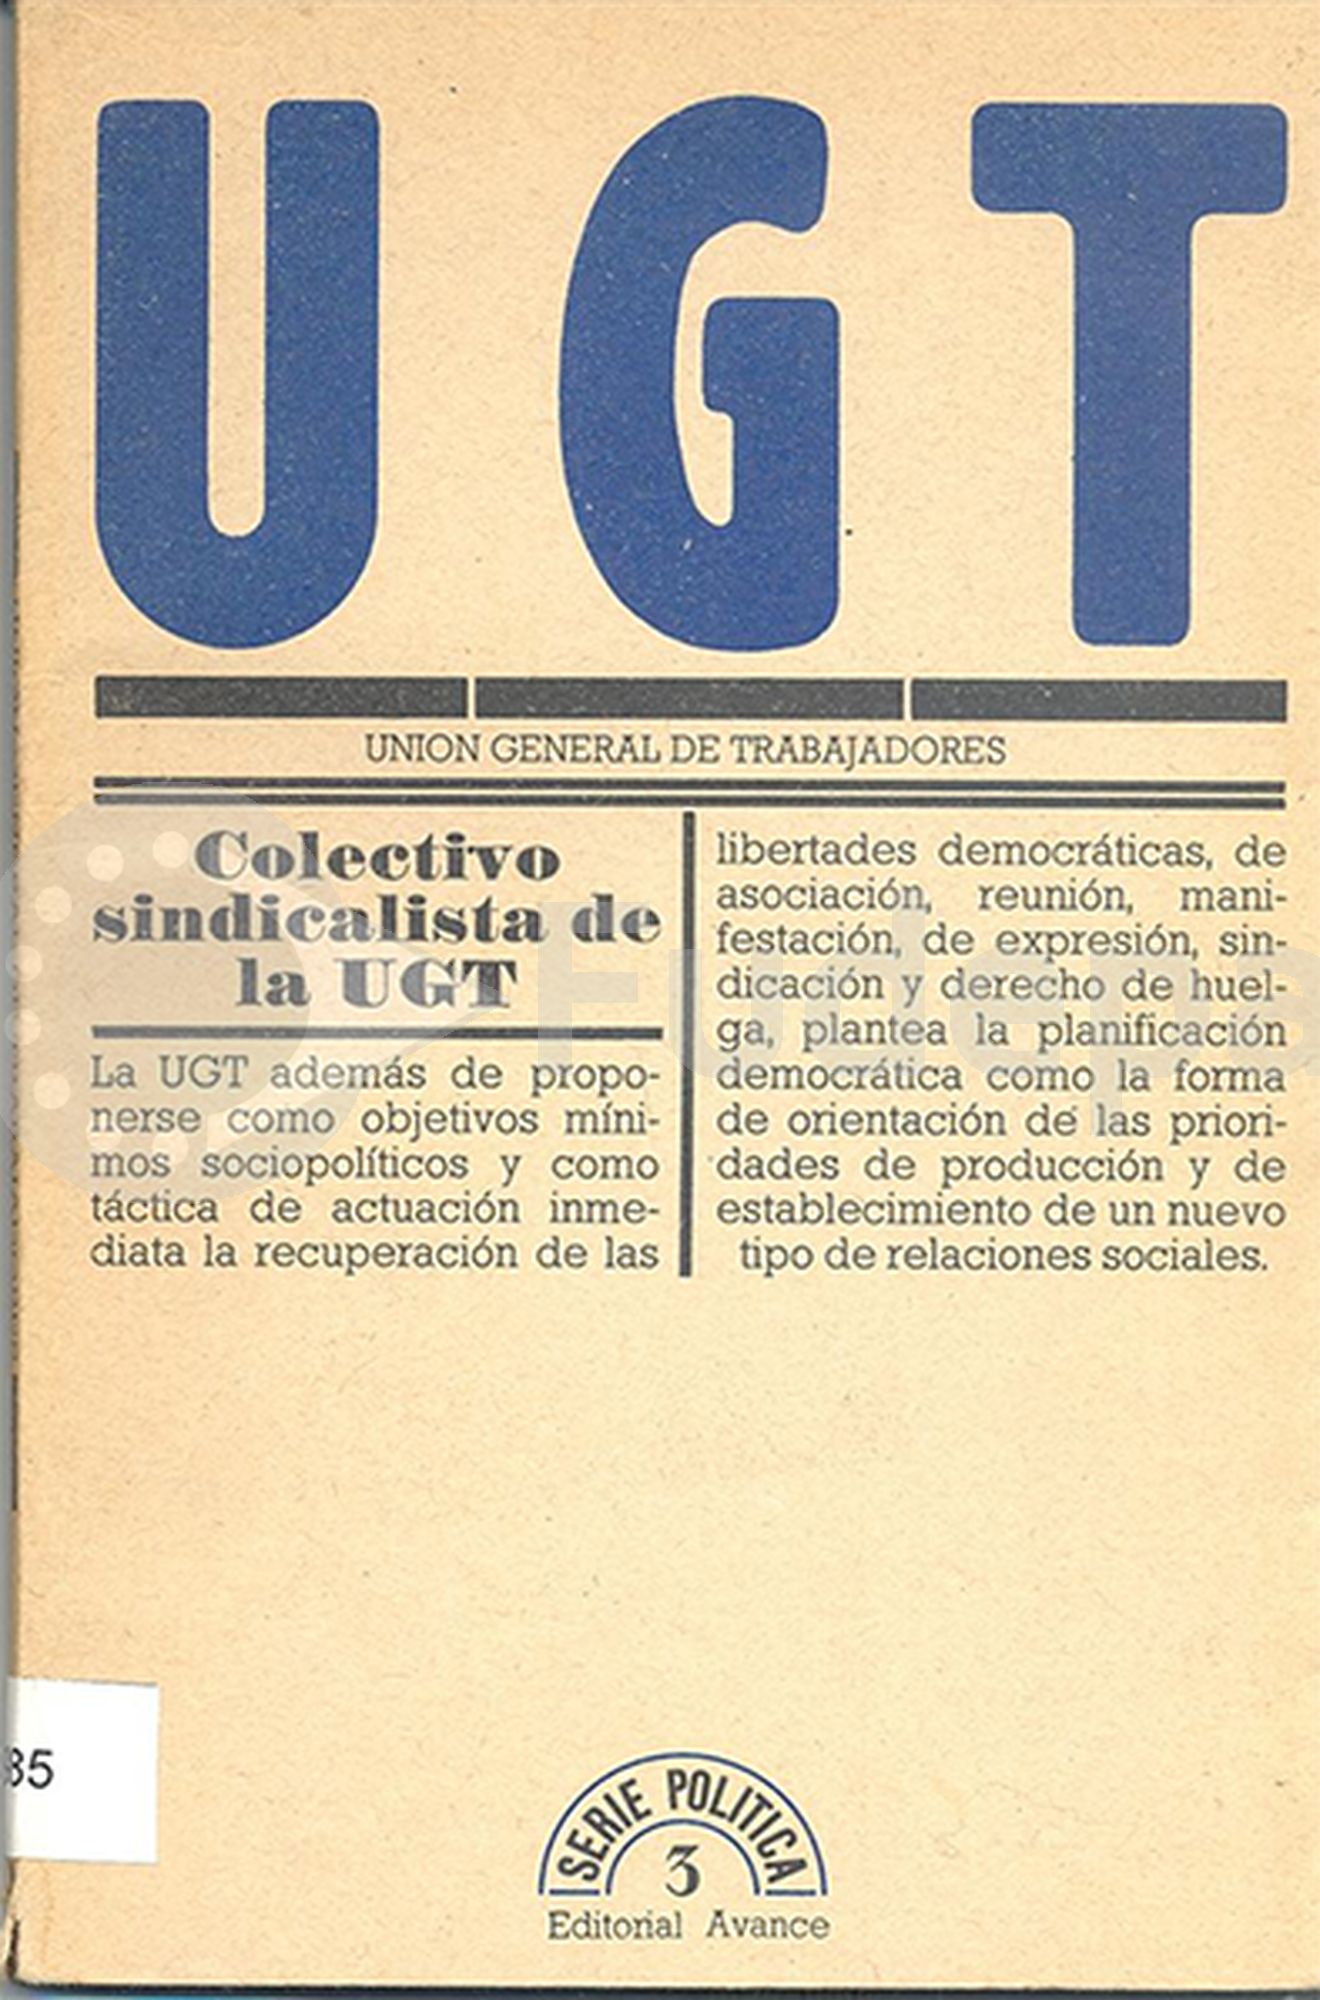 Unión General de Trabajadores: Colectivo sindicalista de la UGT. 1976. R3.985